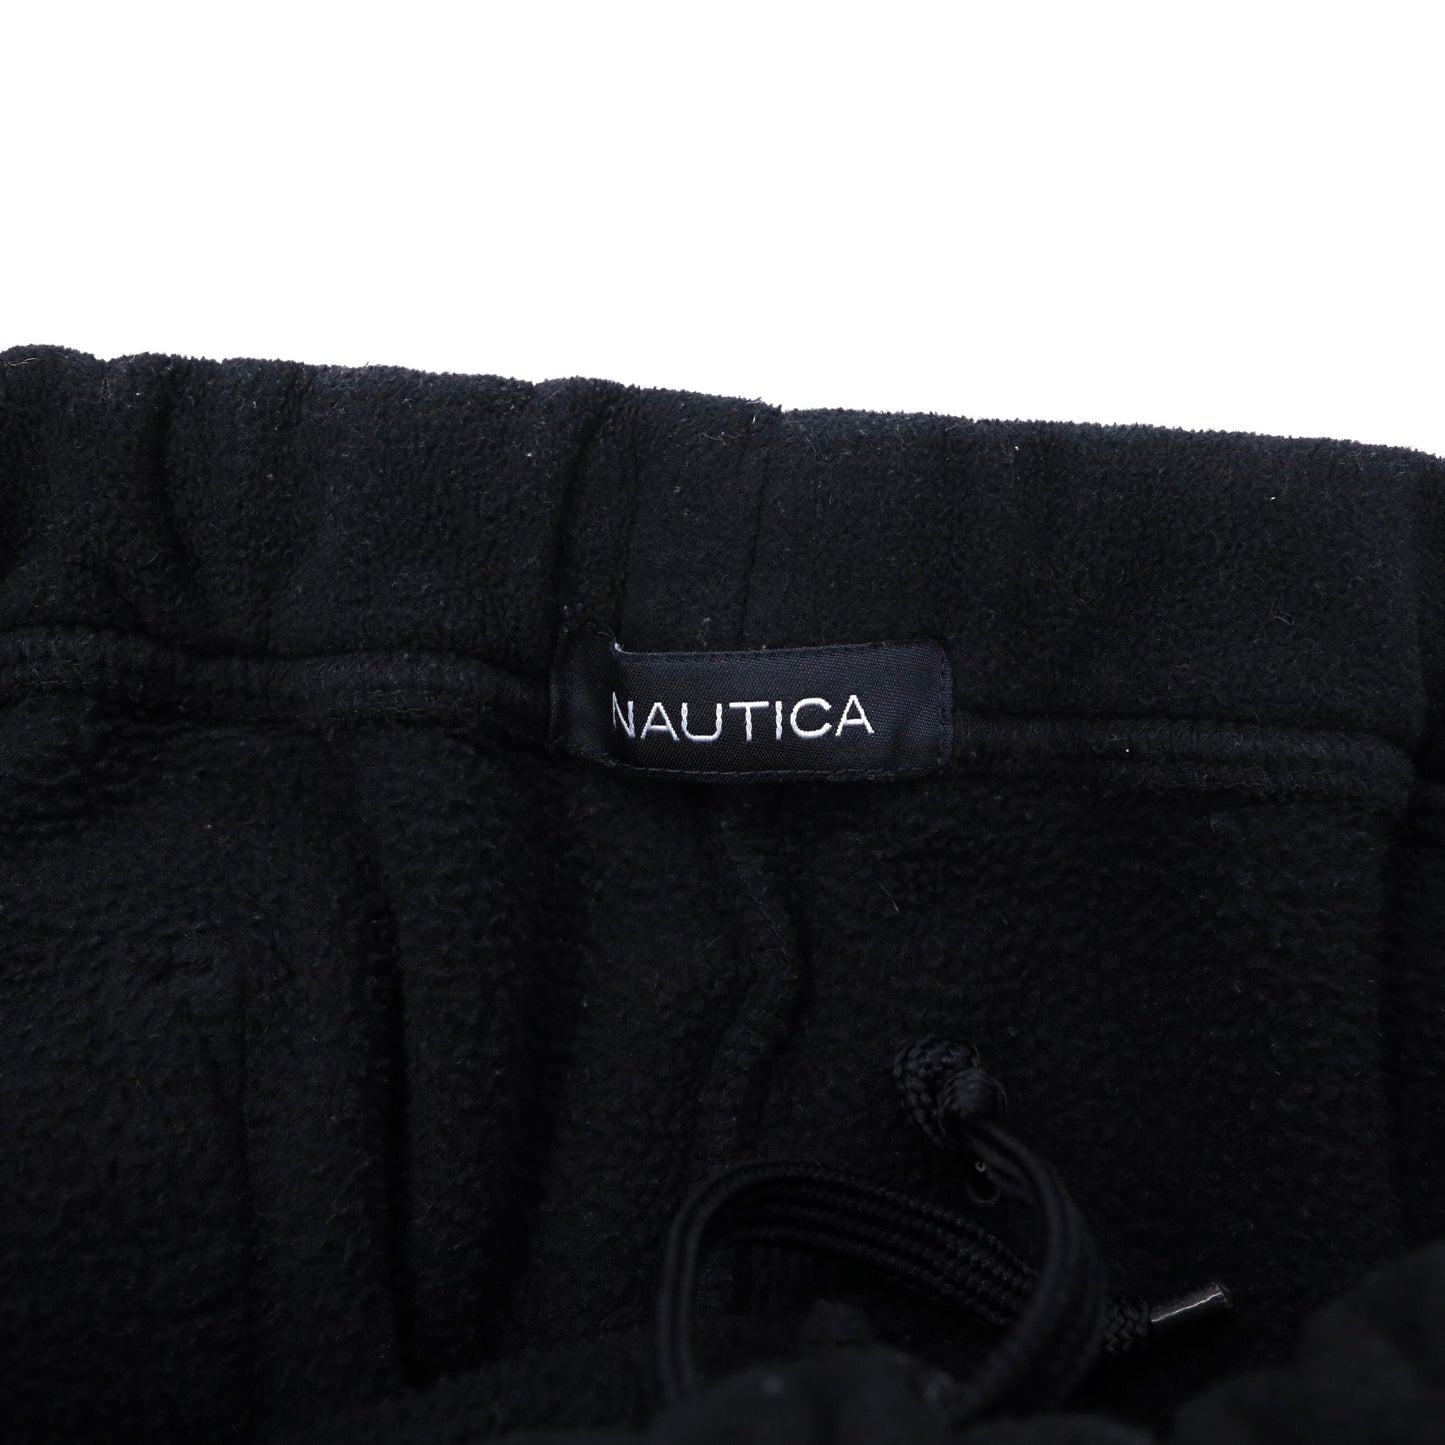 NAUTICA フリース イージーパンツ XL ブラック ポリエステル